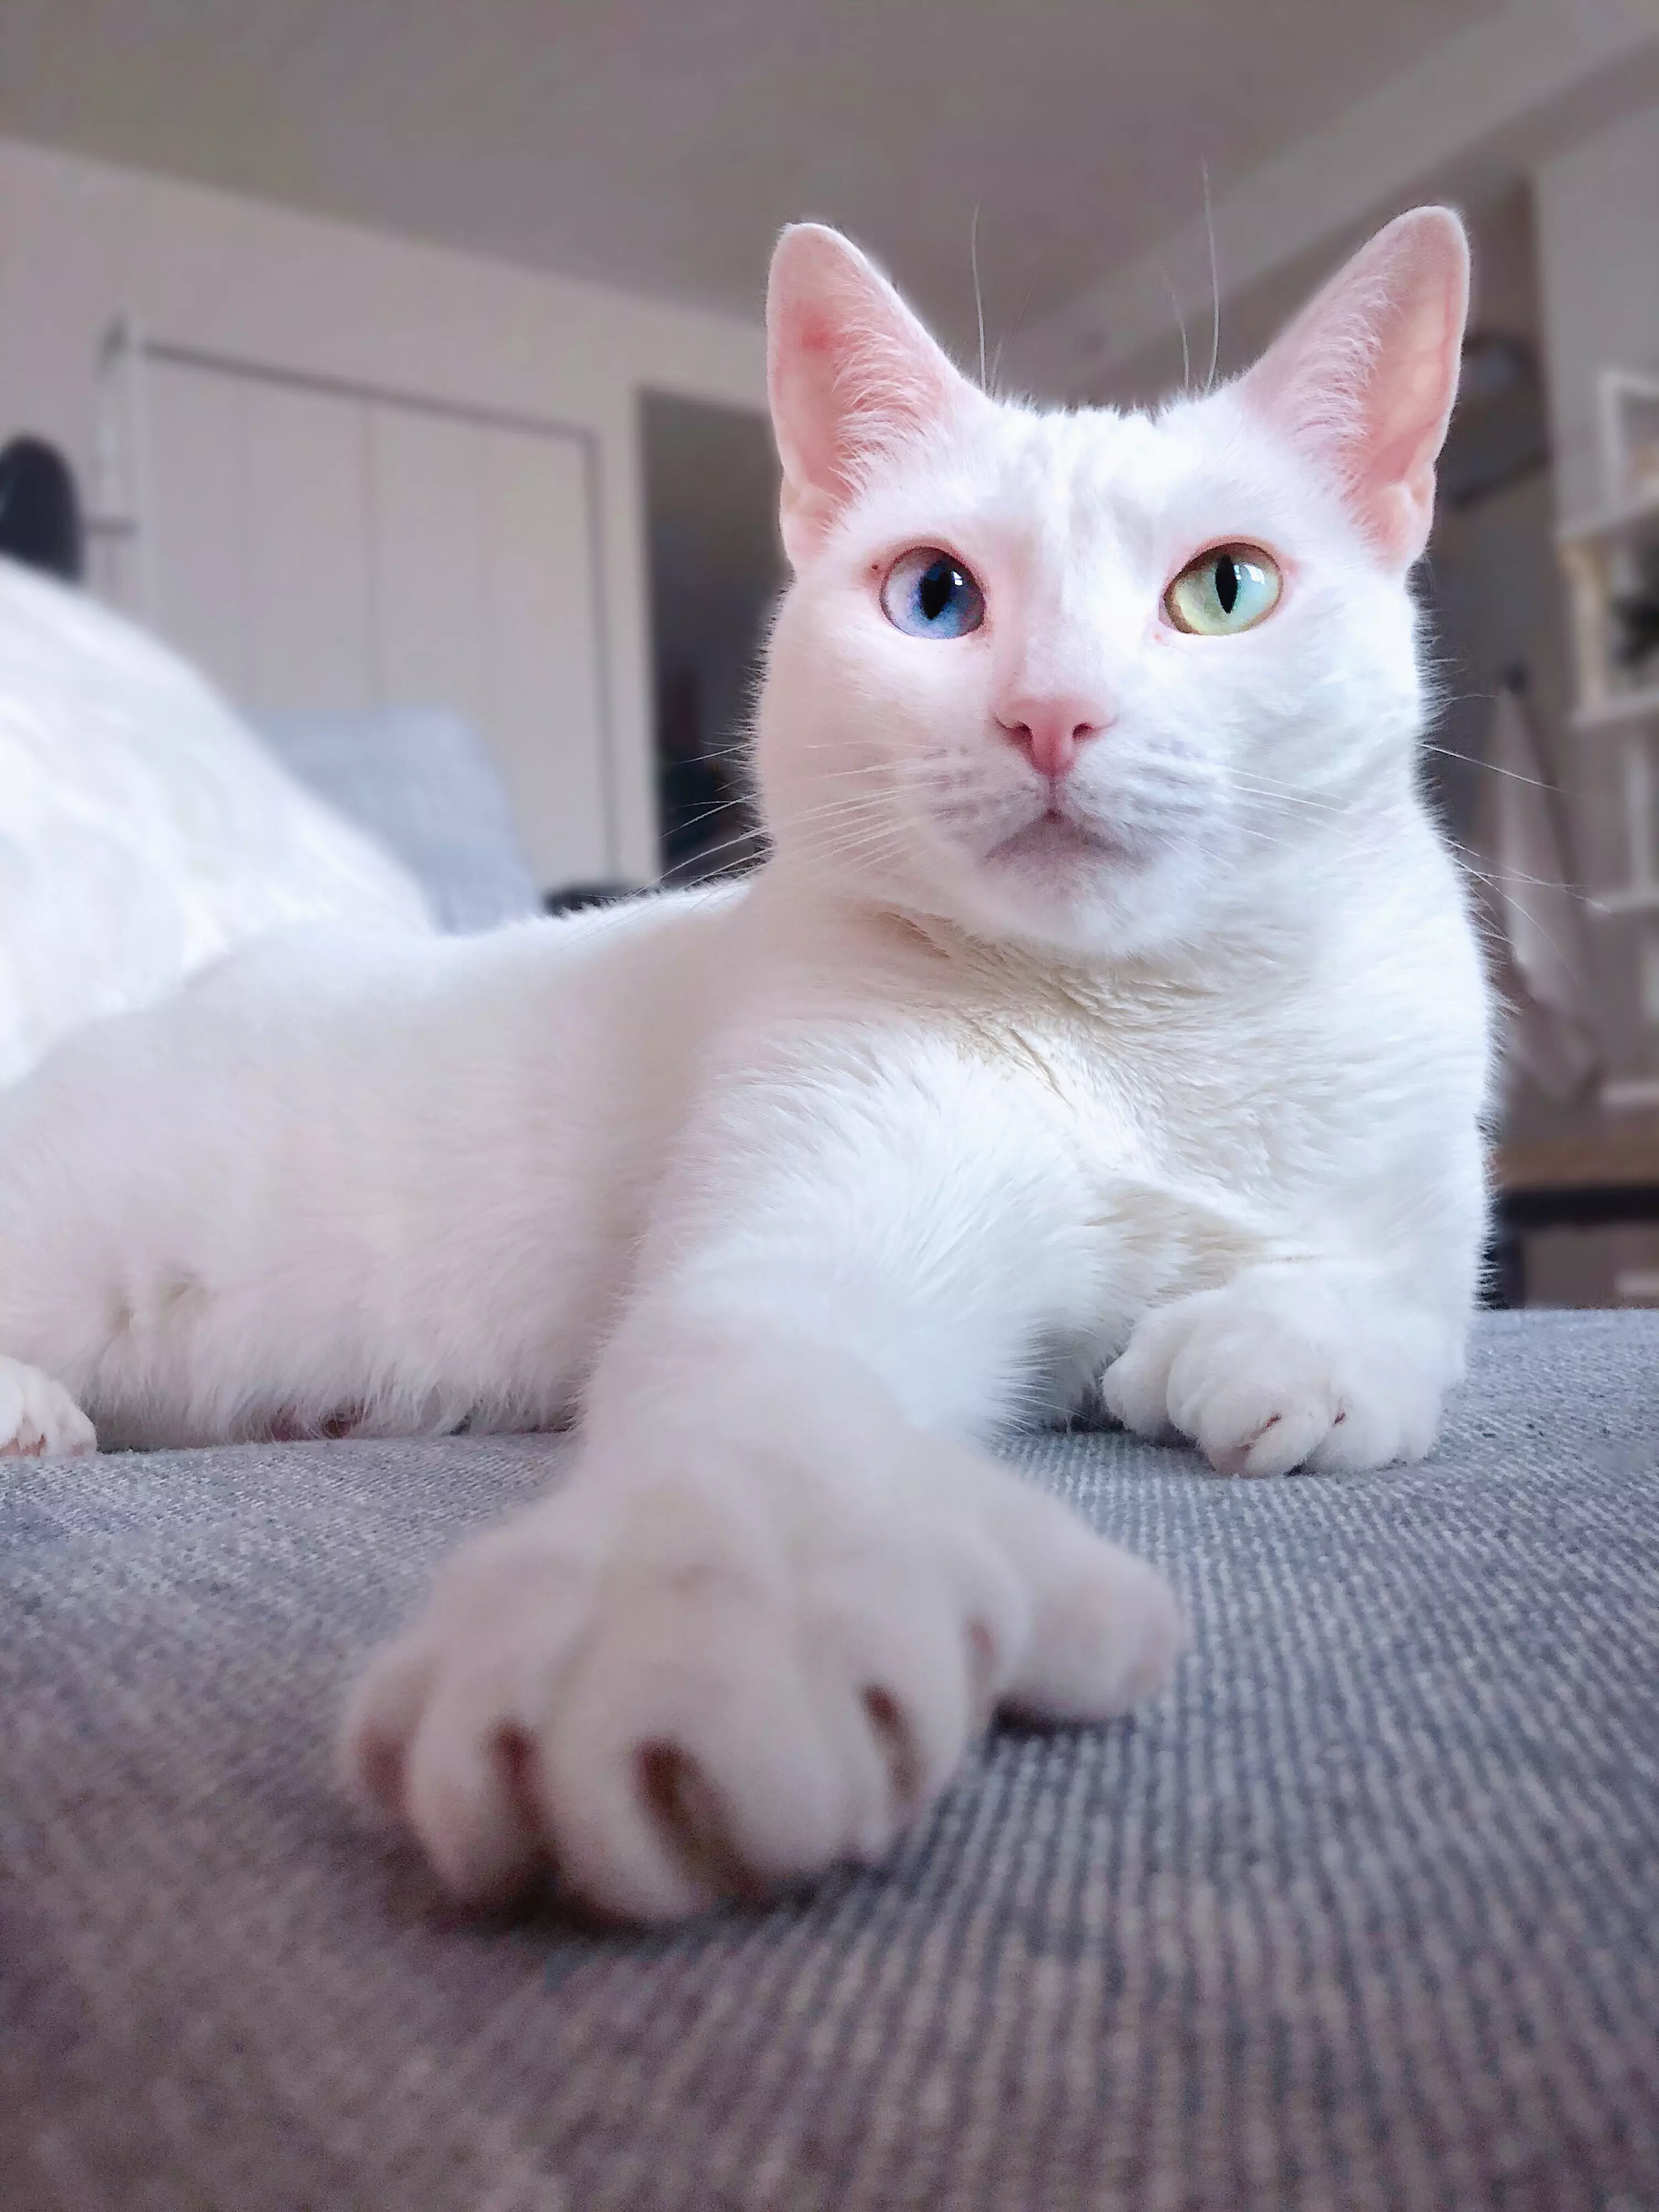 Snowy white Sansa was born with rare condition heterochromia (